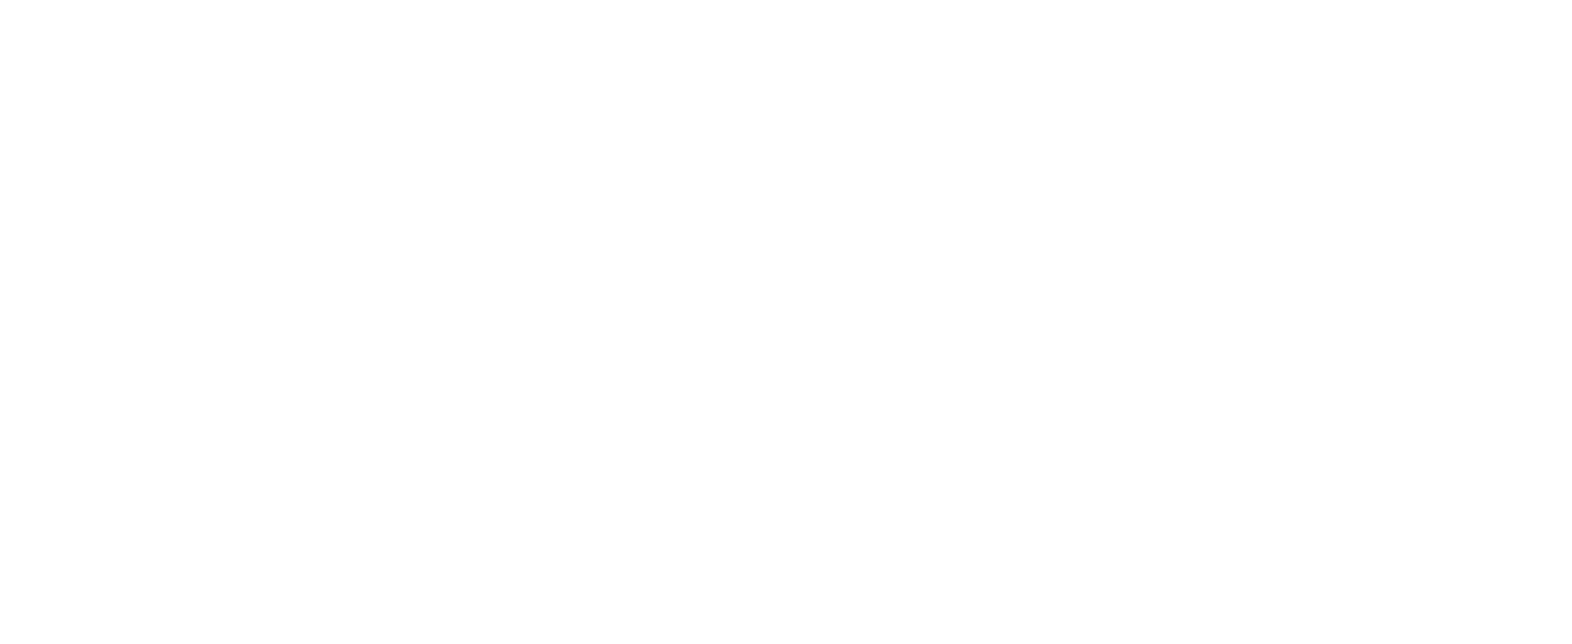 Vmware logo for dark backgrounds (transparent PNG)